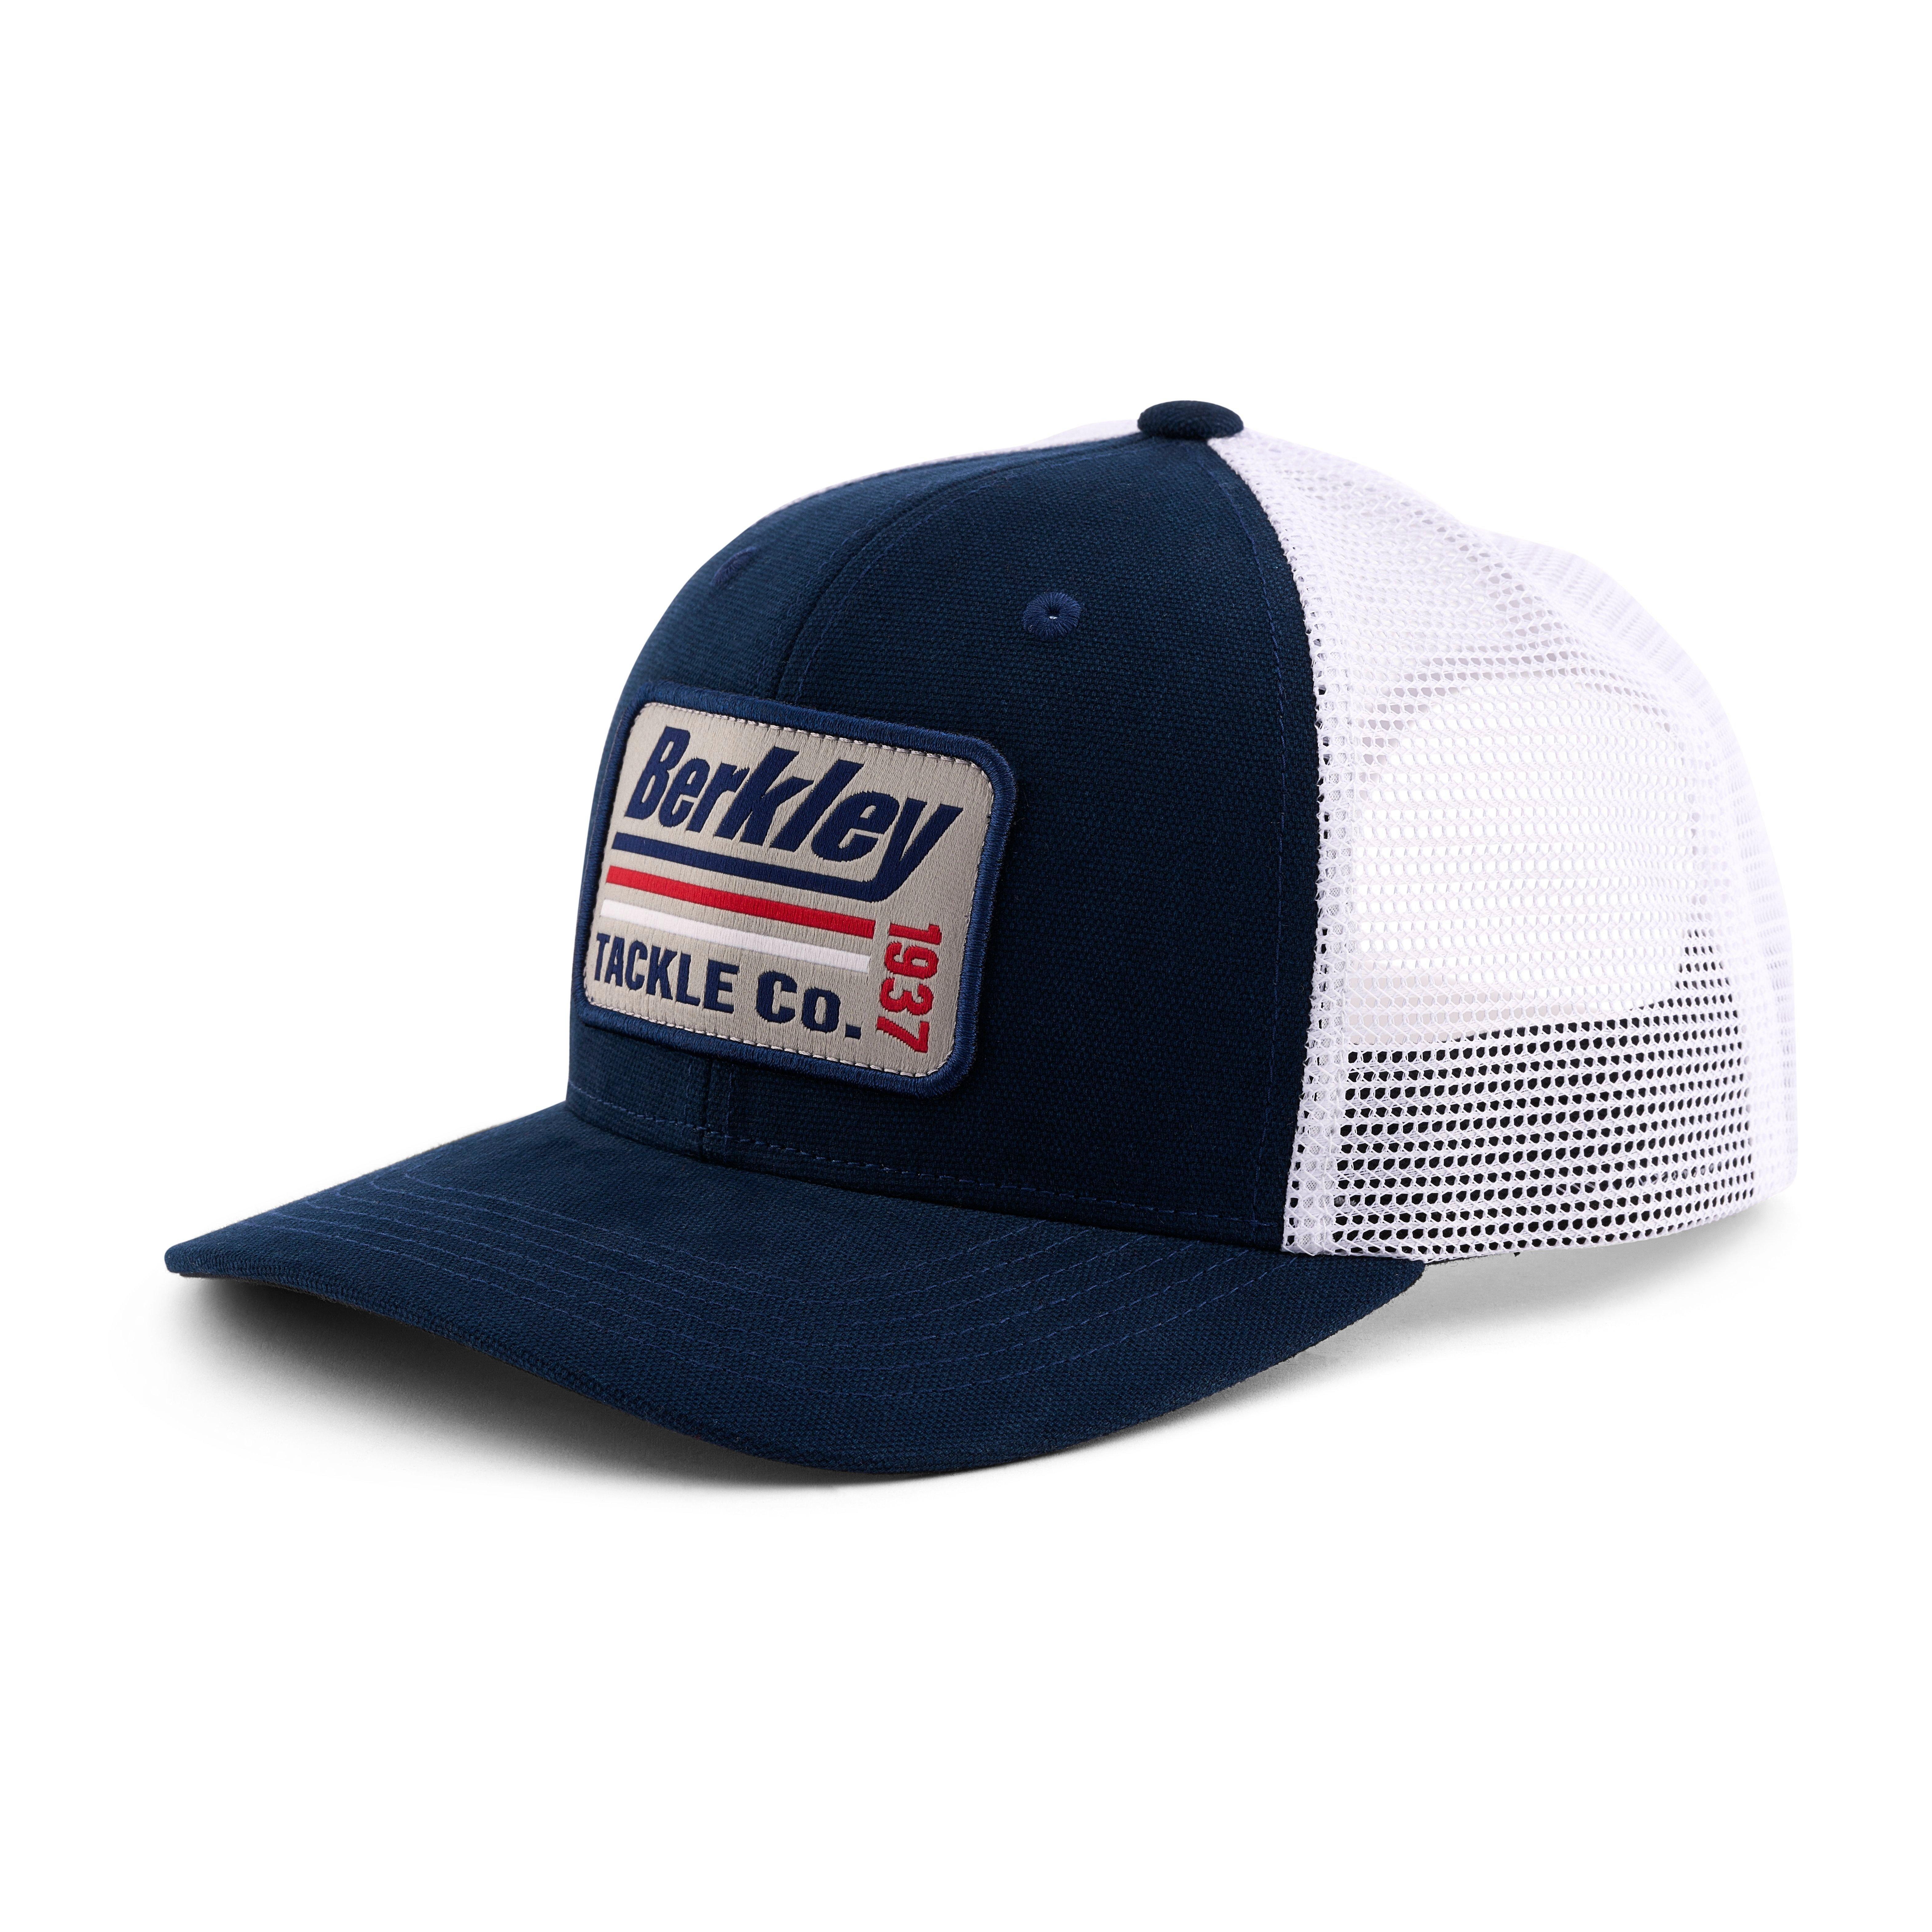 Berkley Fishing Hats for Men